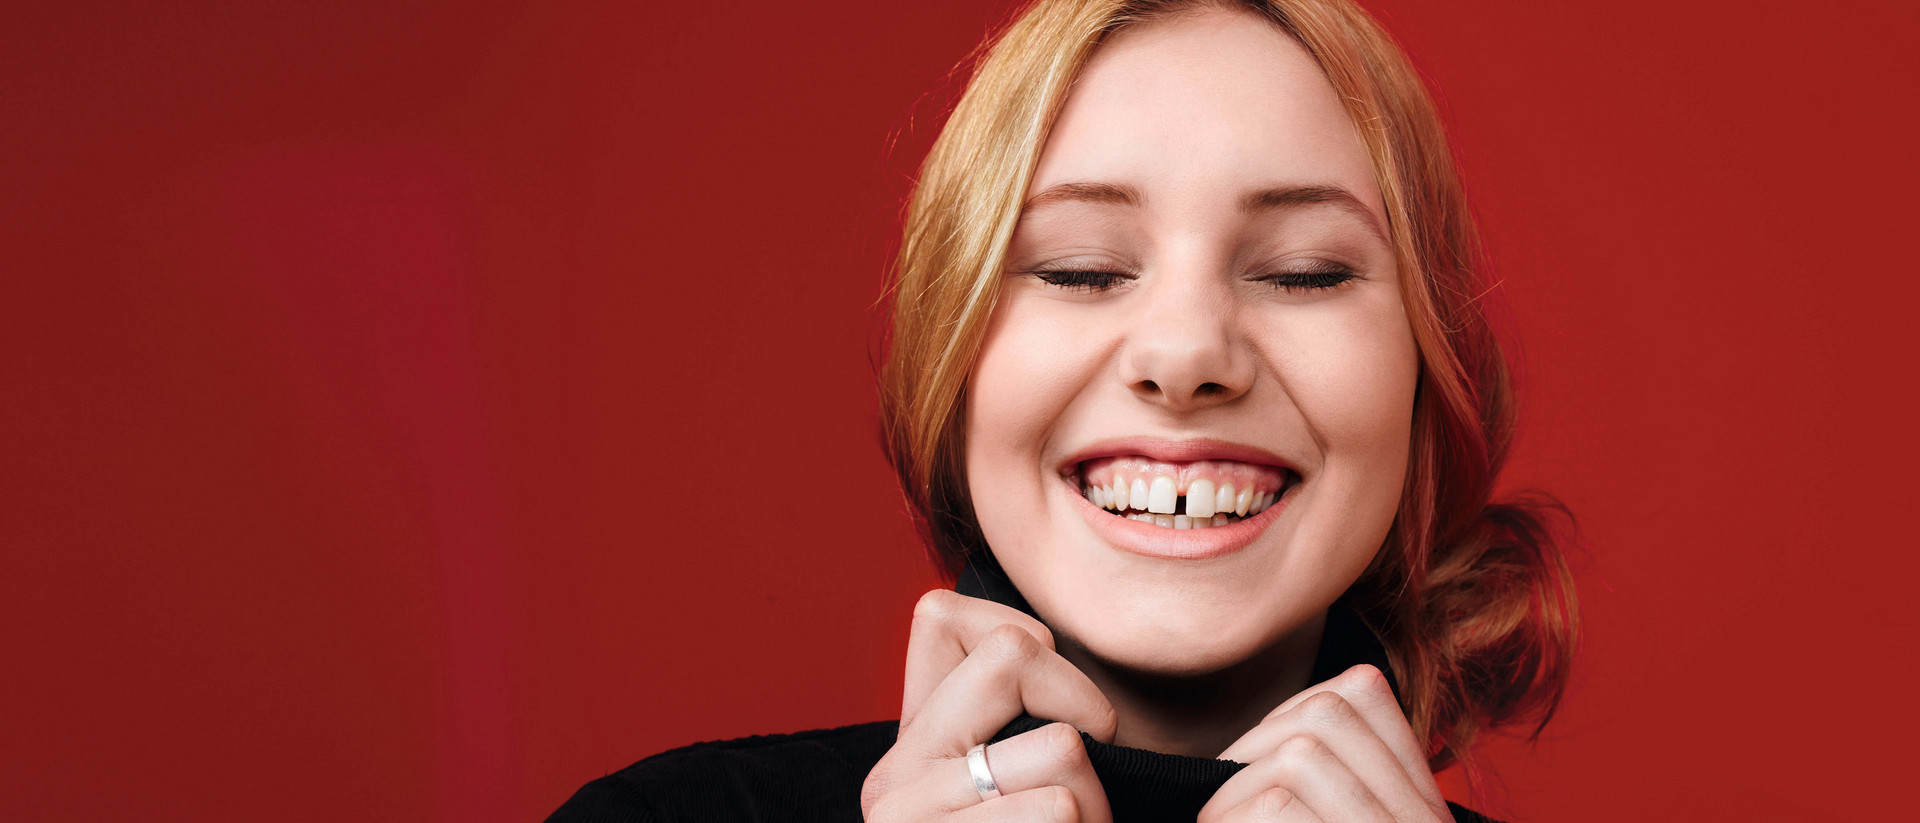 Eine junge Frau lacht mit geschlossenen Augen. Ihre Zahnlücke zwischen den Schneidezähnen ist dabei zu sehen.